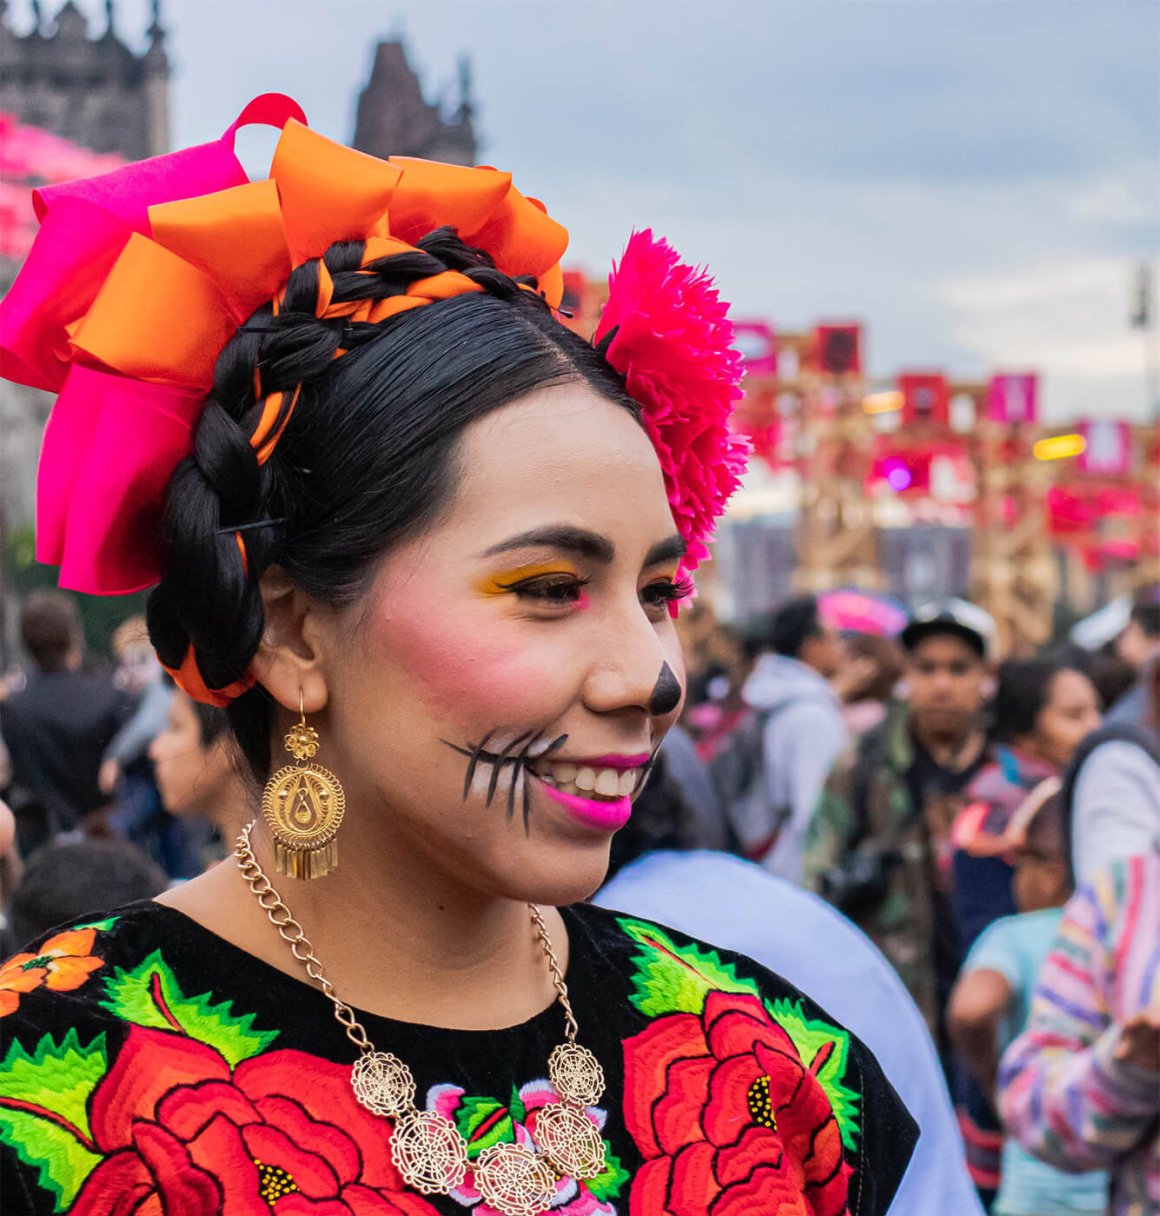 Top 5 Places to Experience Dia De Los Muertos in Mexico